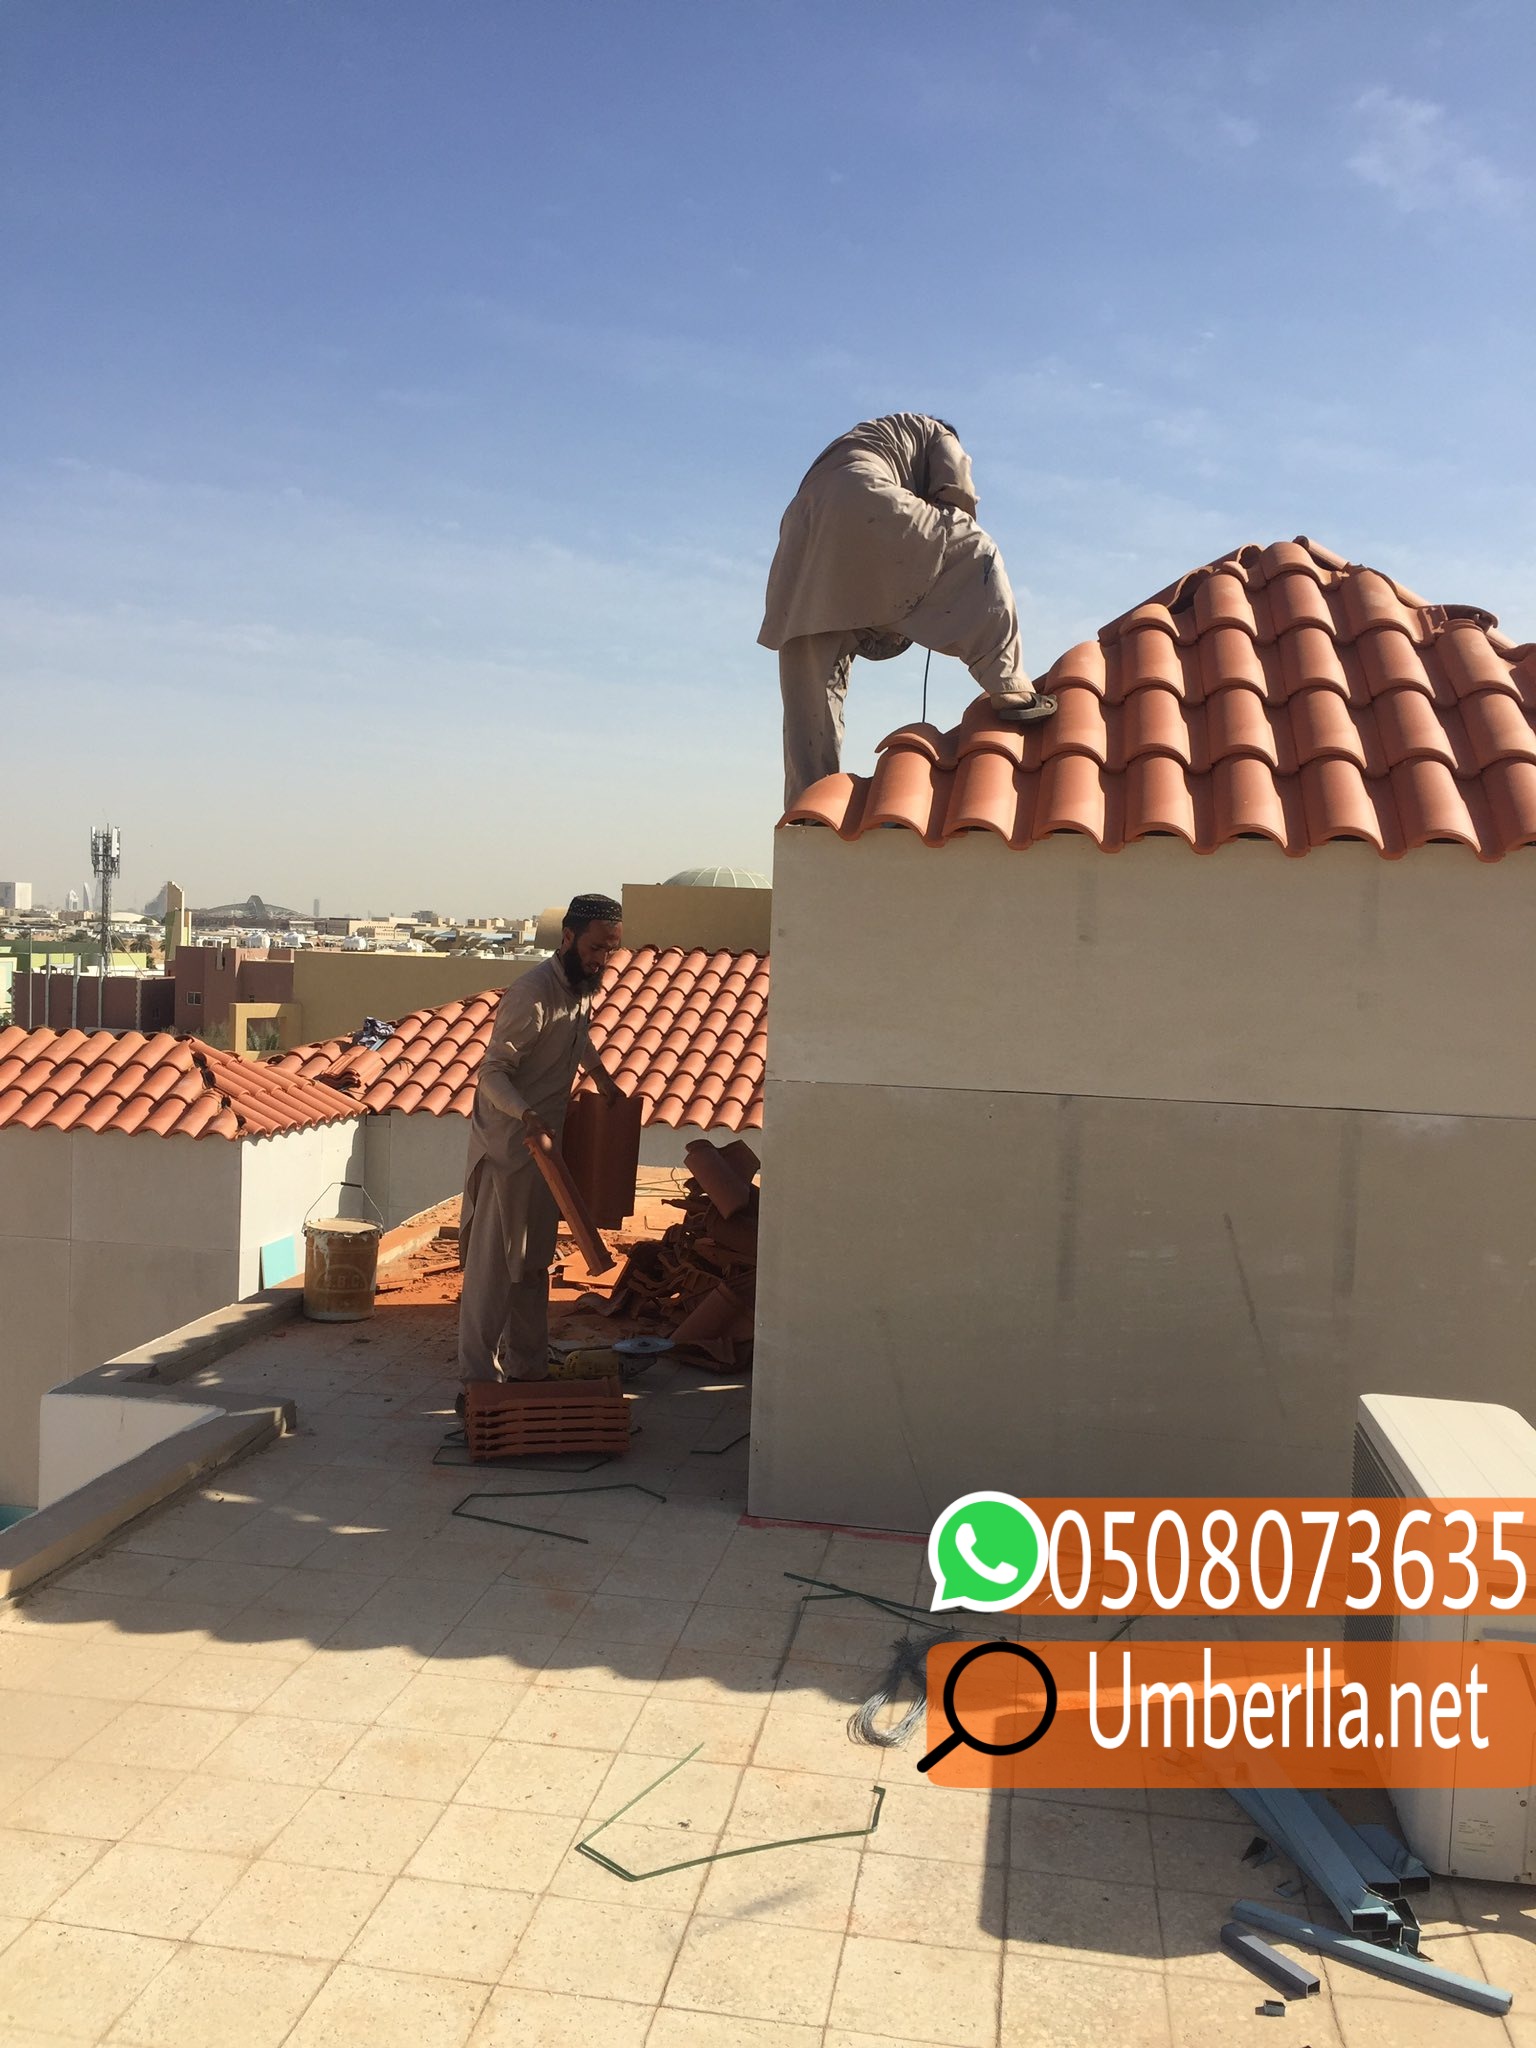 بناء غرف اسمنت بورد في الرياض , 0508073635 P_23150revc7